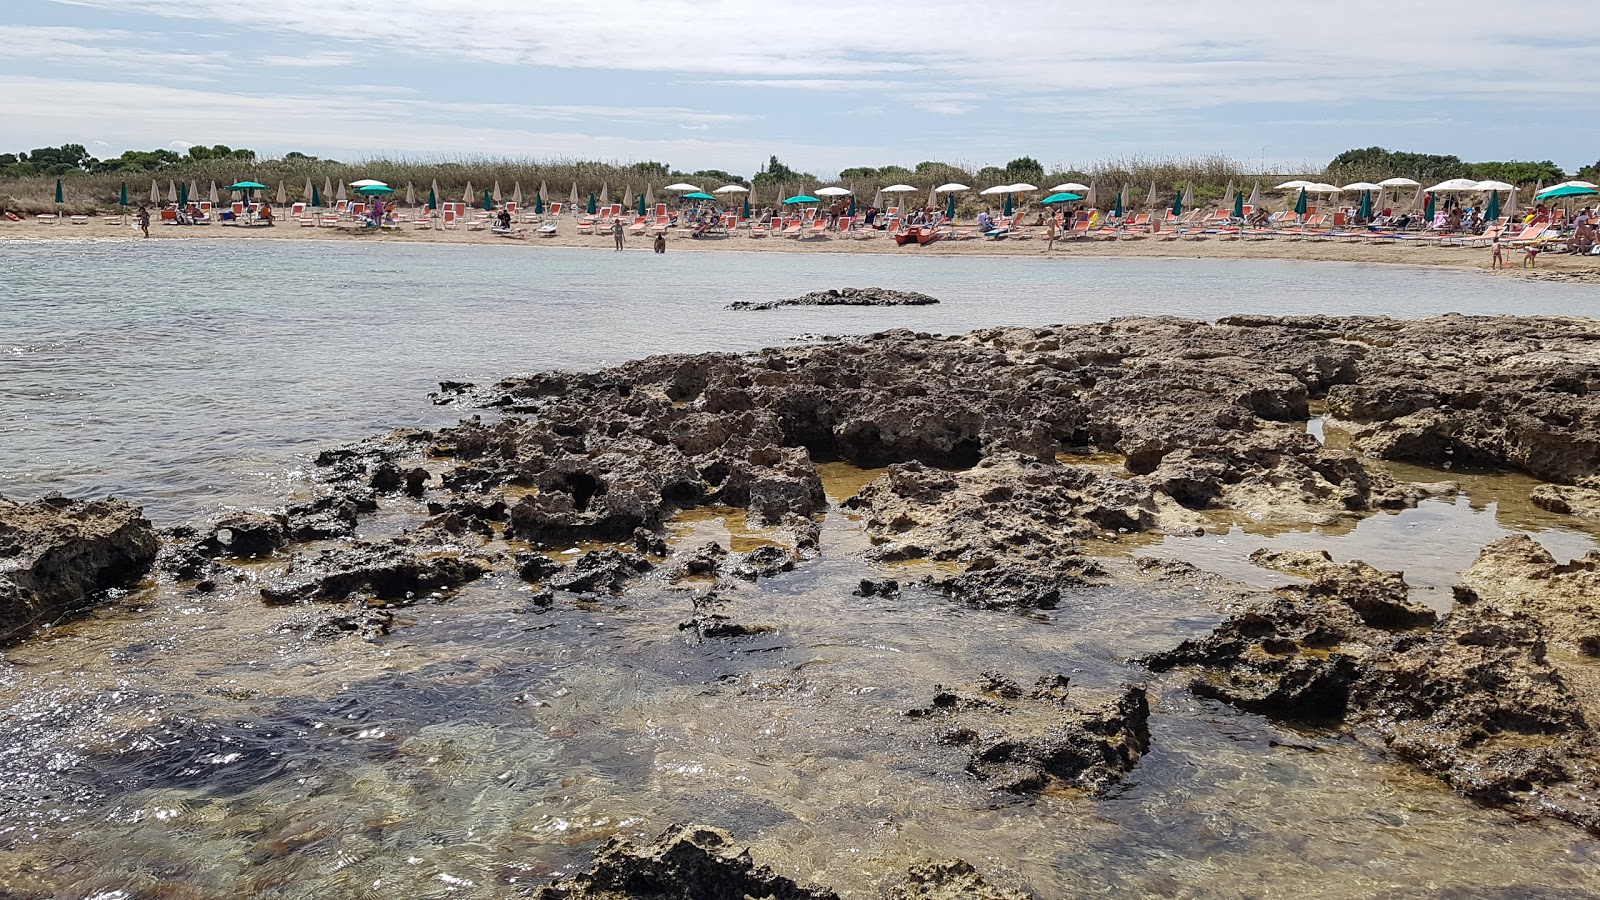 Foto von Torre Santa Sabina beach befindet sich in natürlicher umgebung